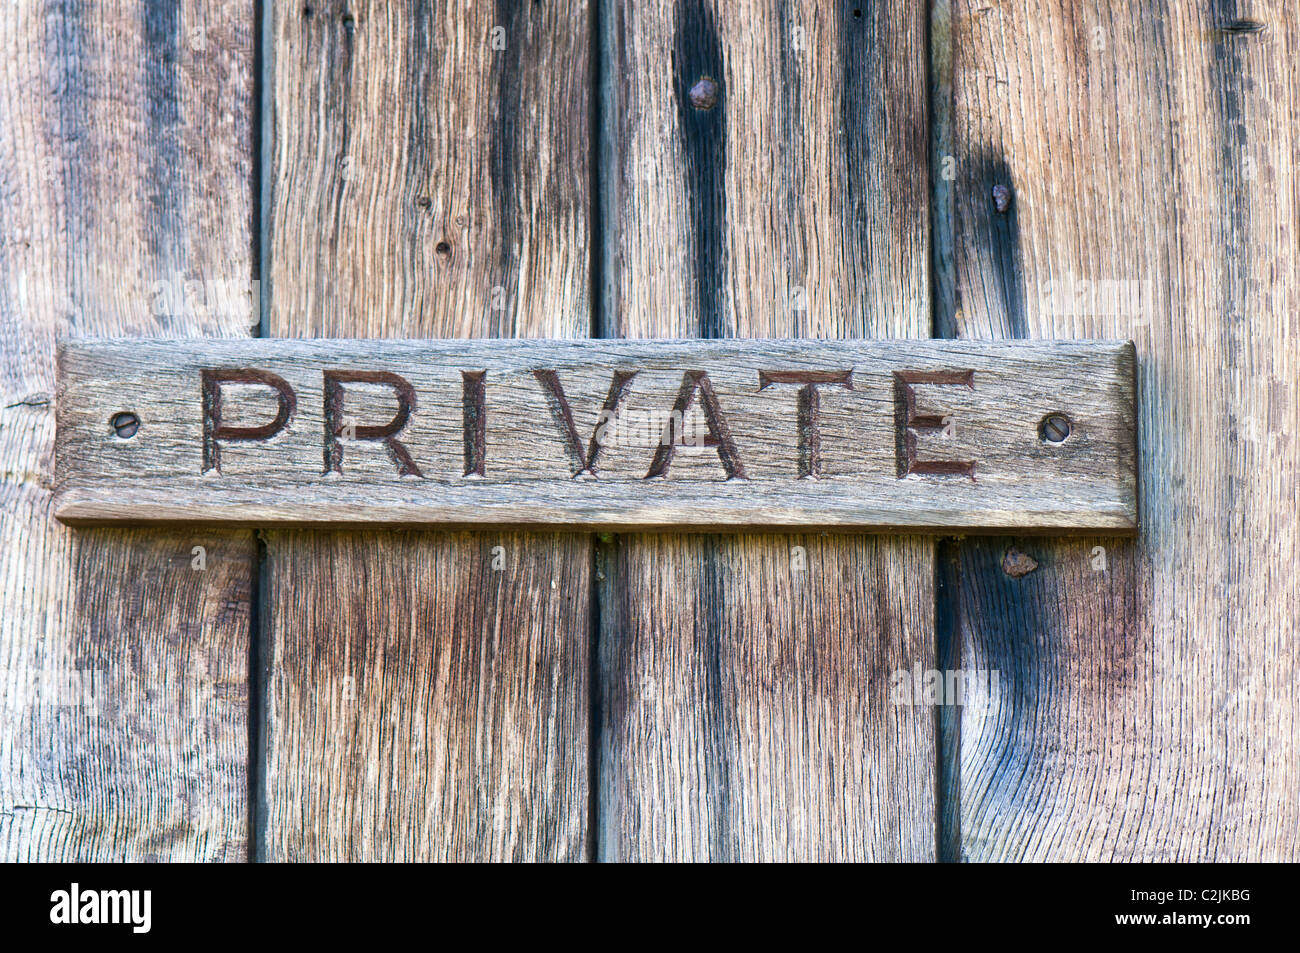 Eingangstür mit 'Privat'-Schild; Private sign at wooden door Stock Photo